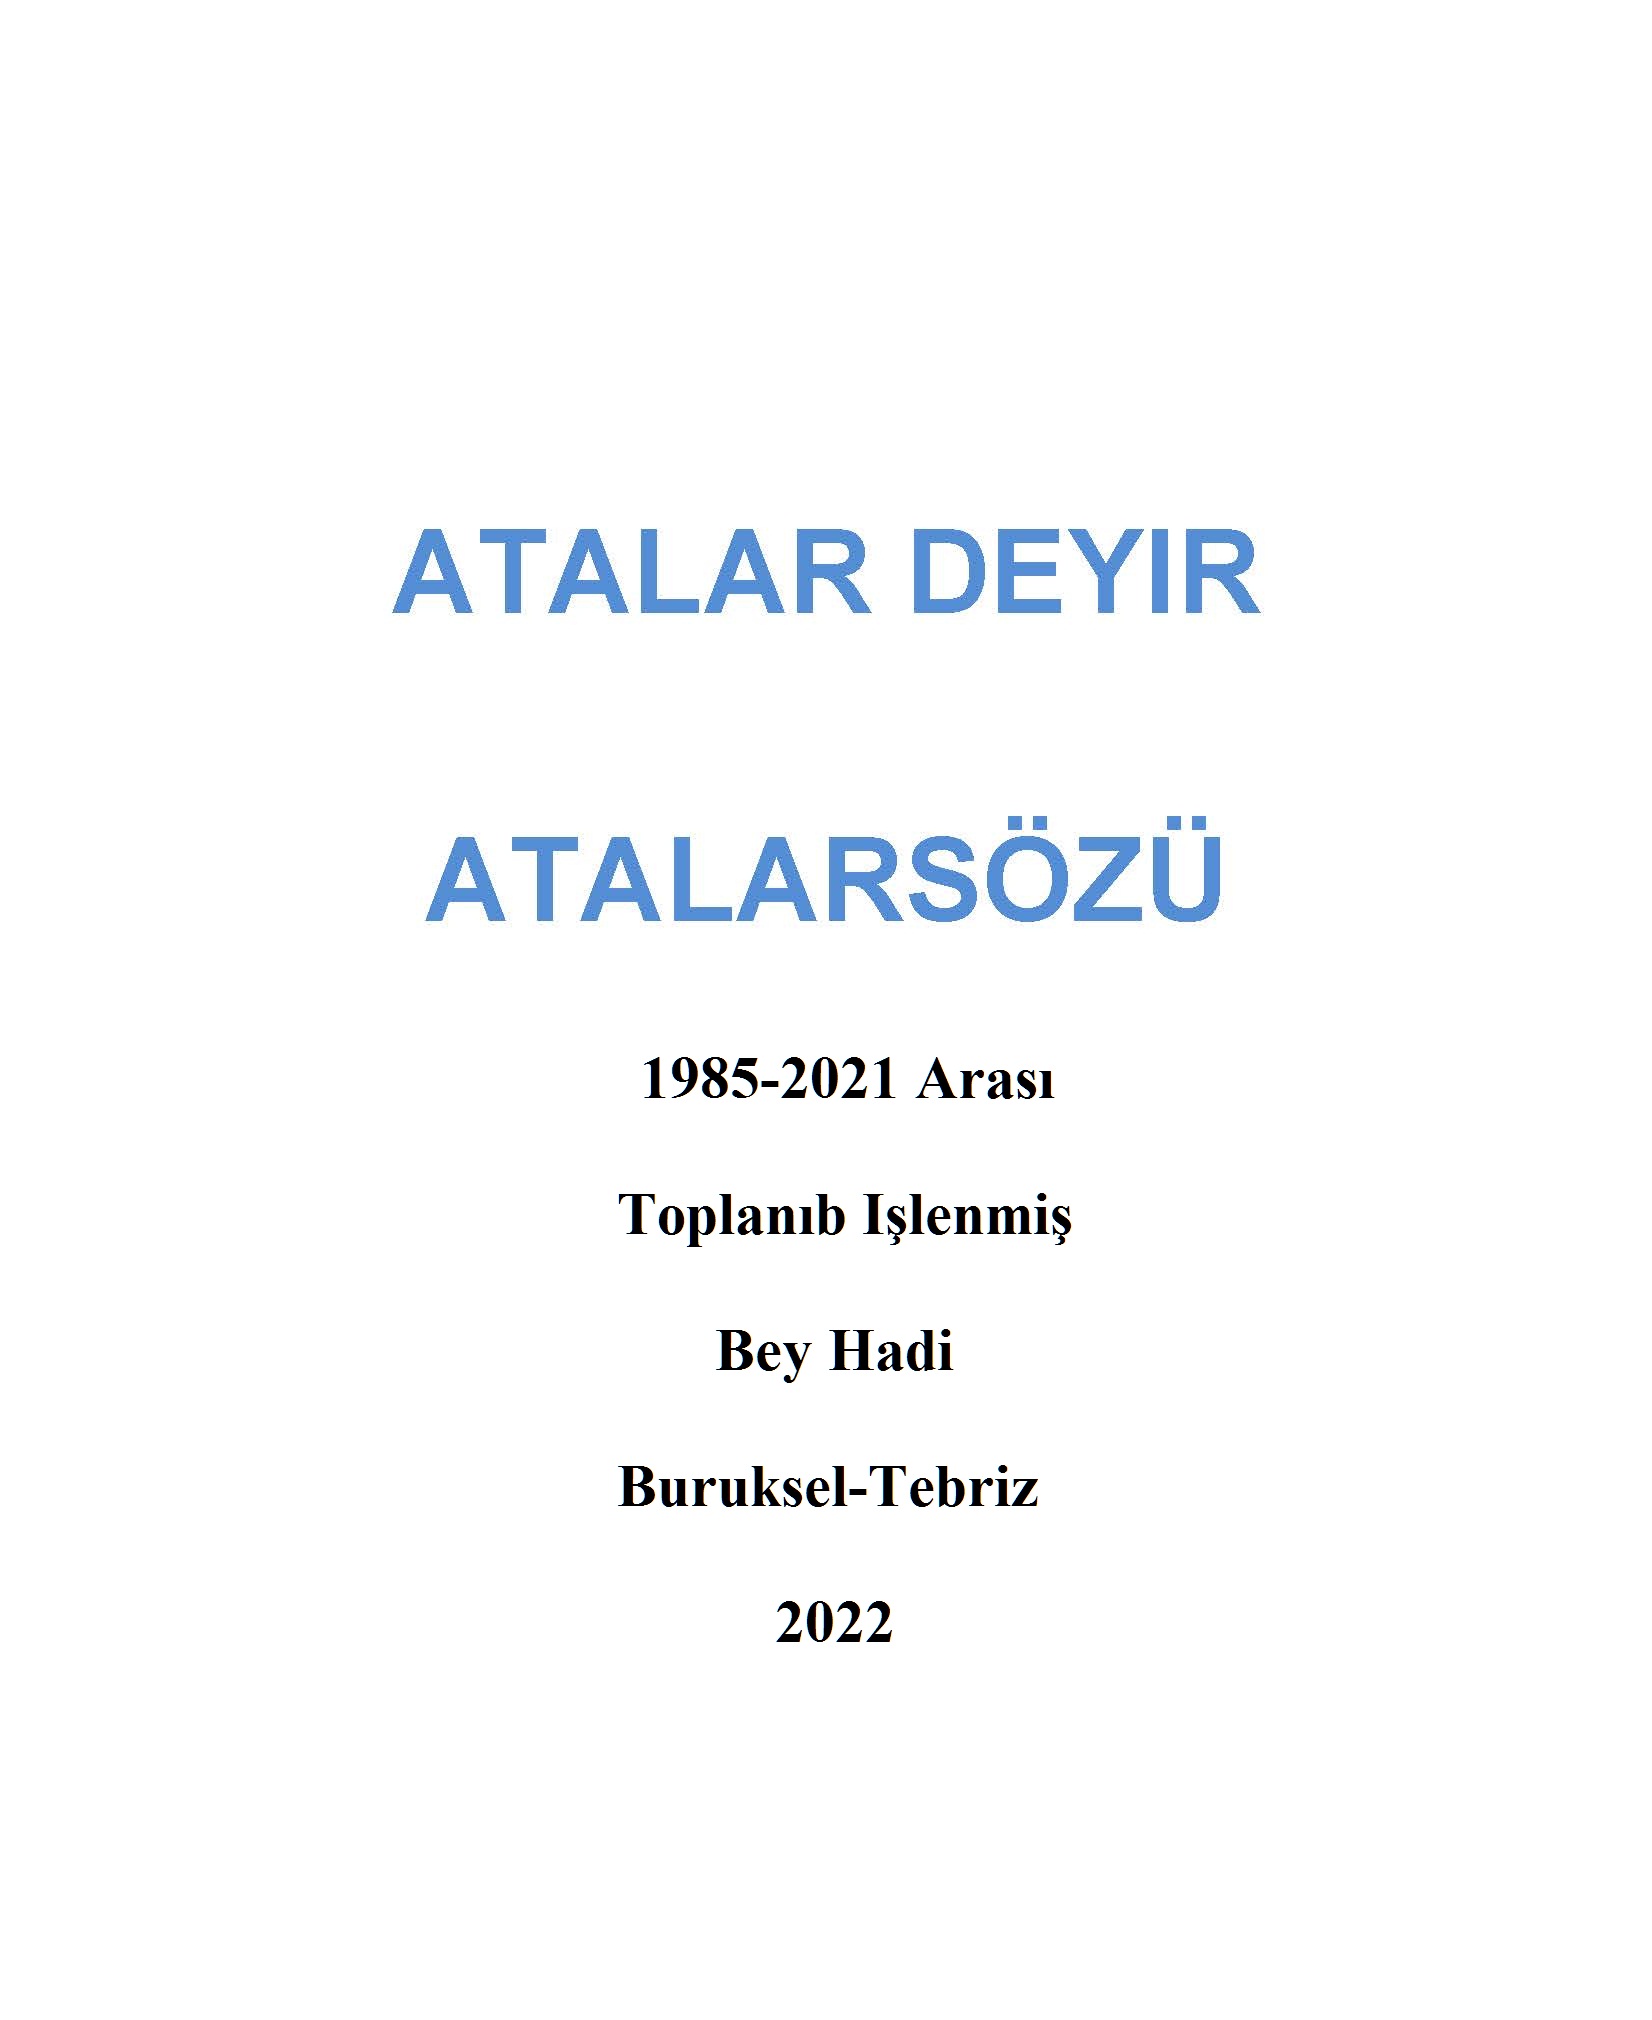 1985-2021 Arası Toplanıb Işlenmiş Atalar Deyir-Atalarsözü-Bey Hadi-Buruksel-Tebriz-2022